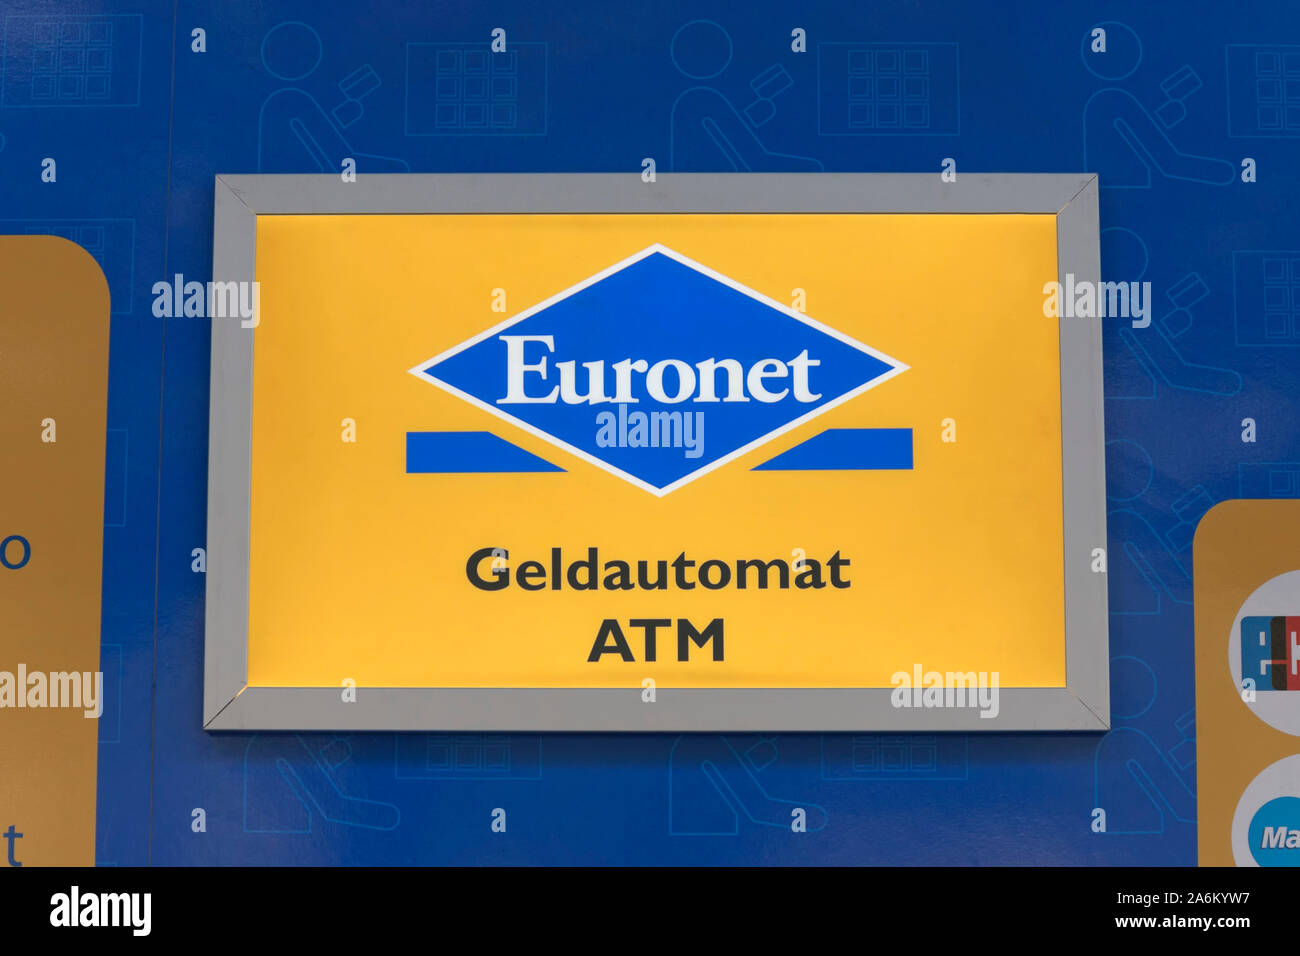 euronet-autoteller-fotos-und-bildmaterial-in-hoher-aufl-sung-alamy